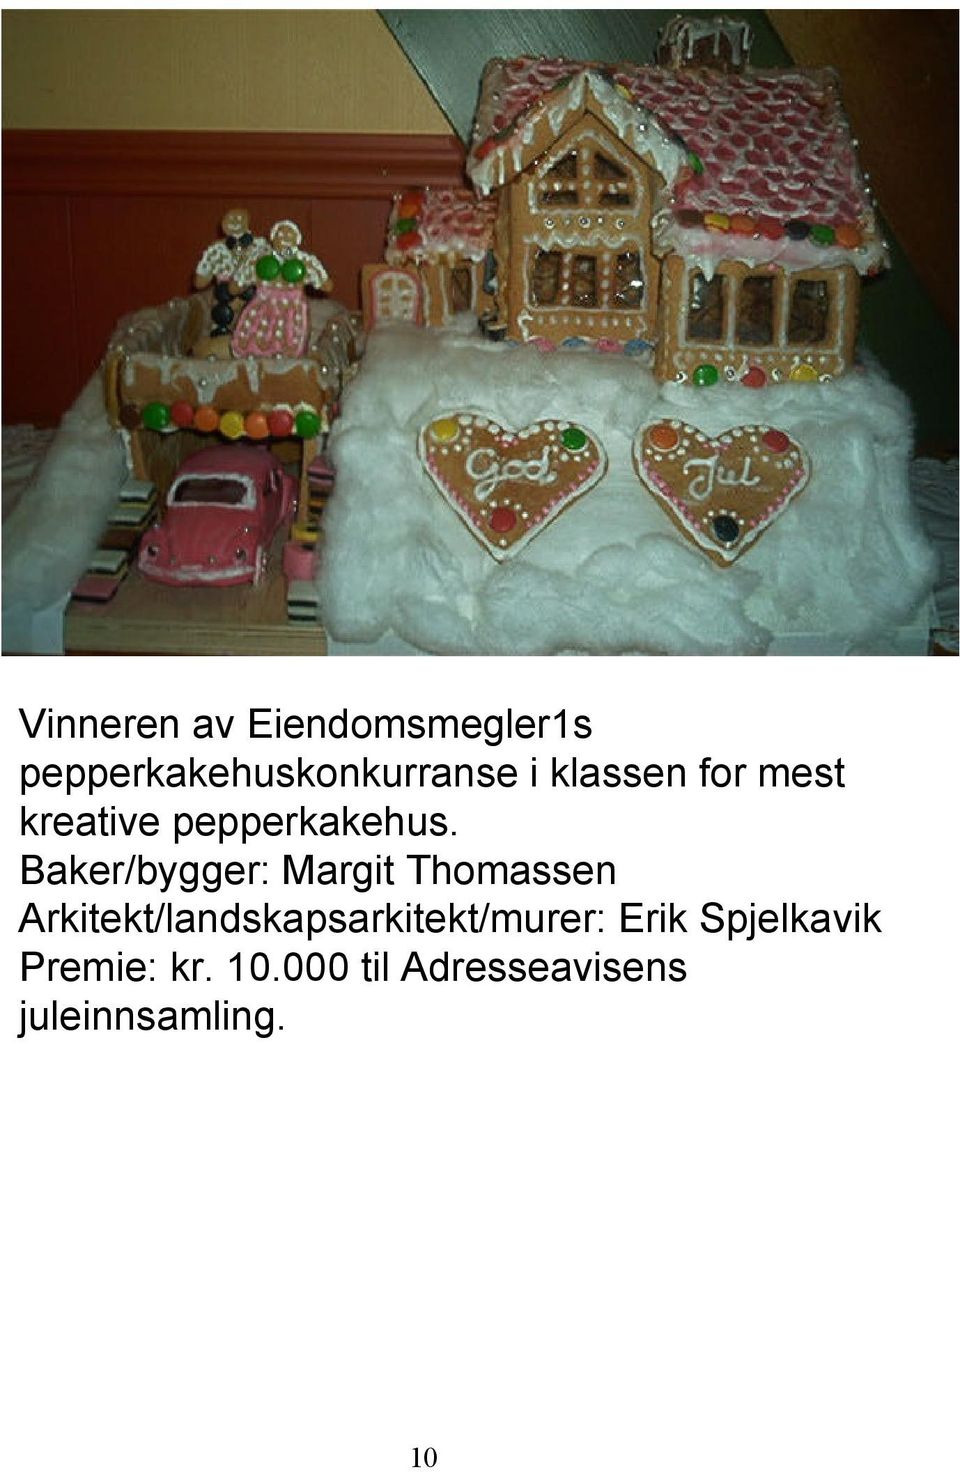 Baker/bygger: Margit Thomassen